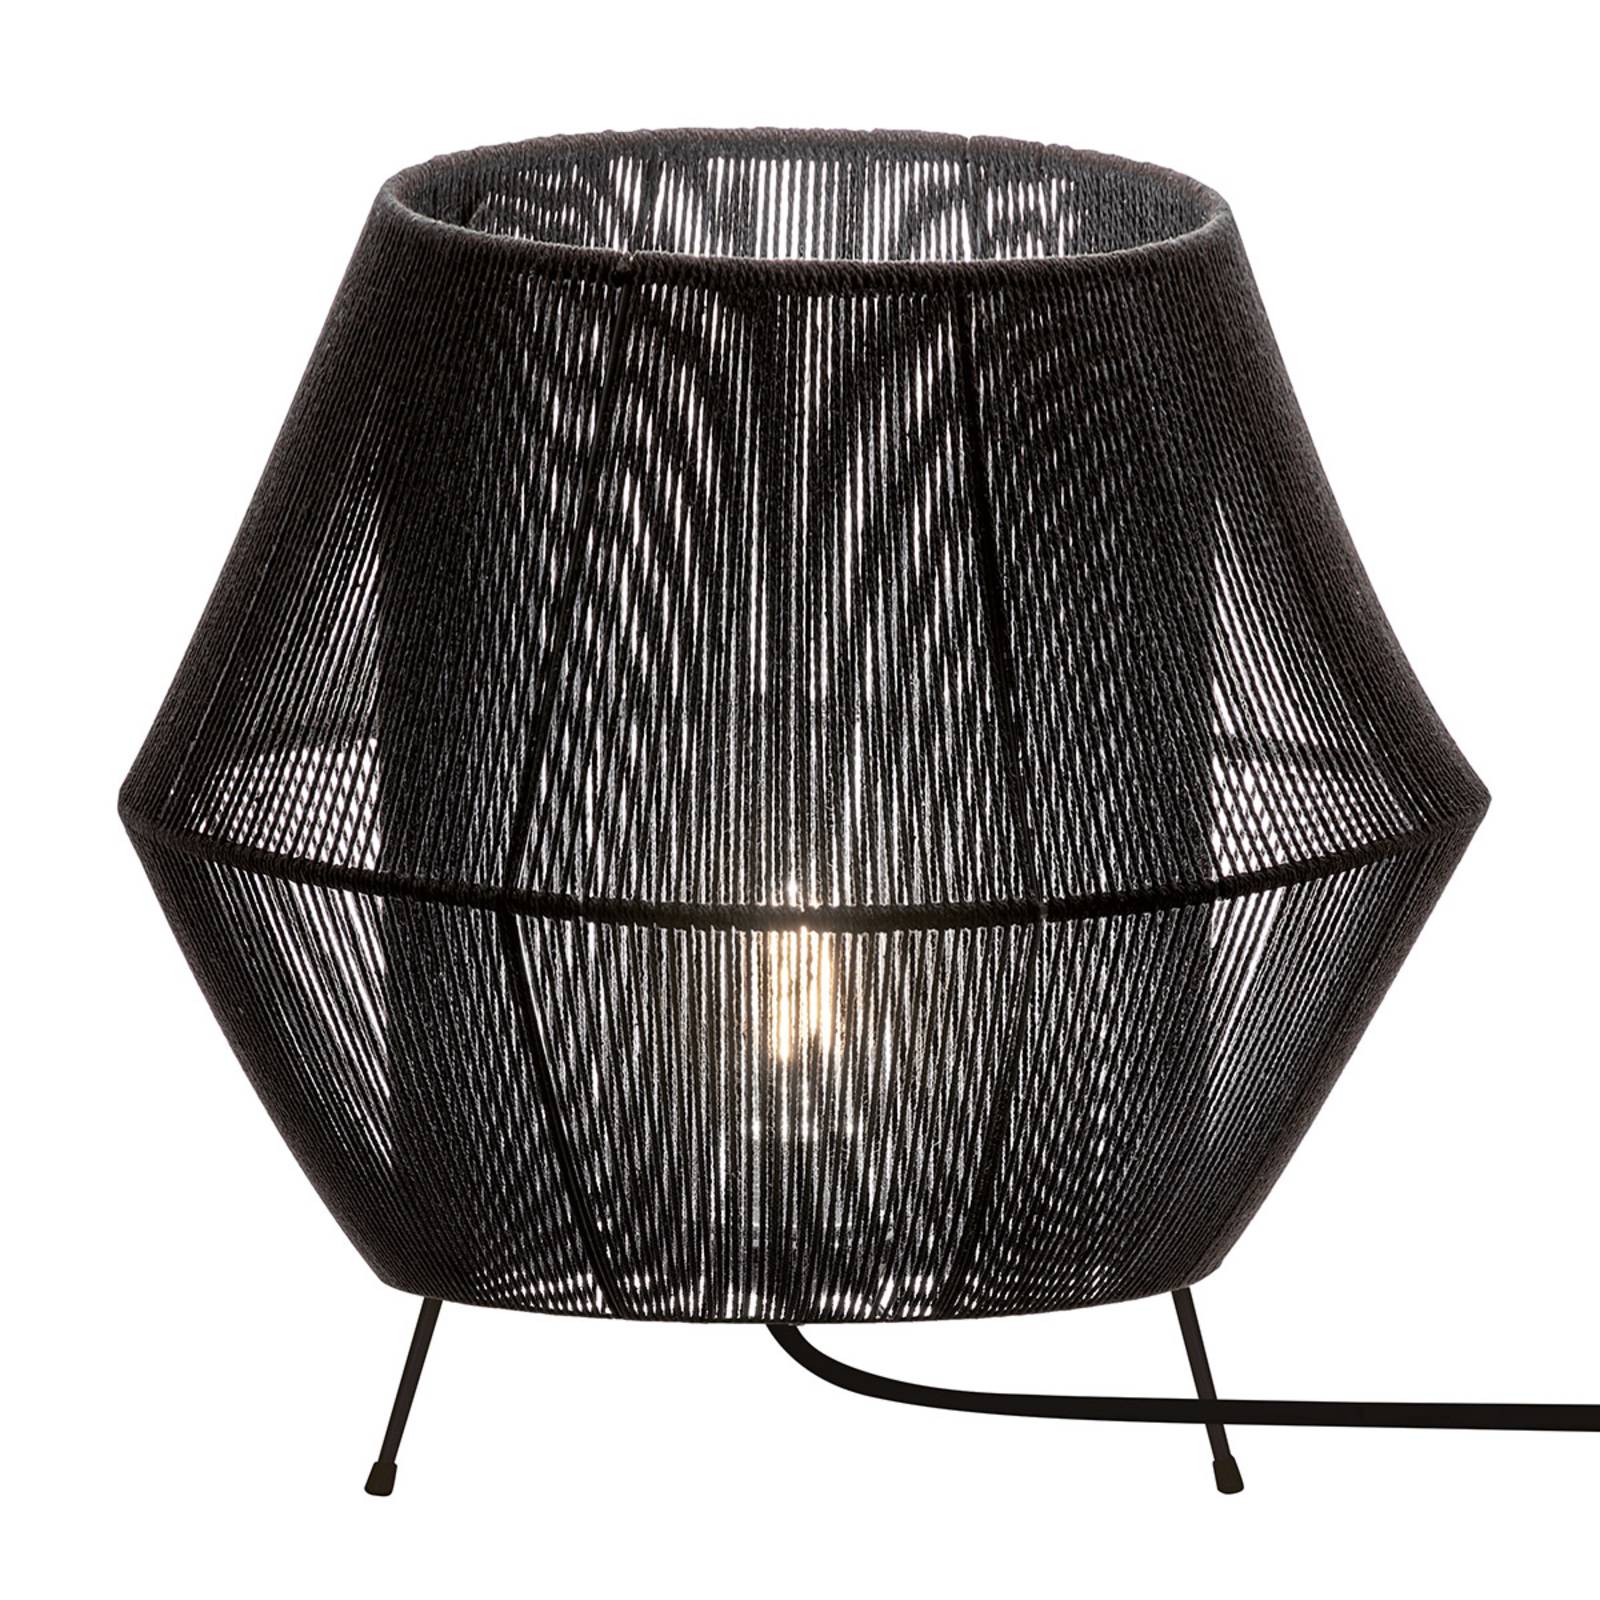 Zara table lamp in black